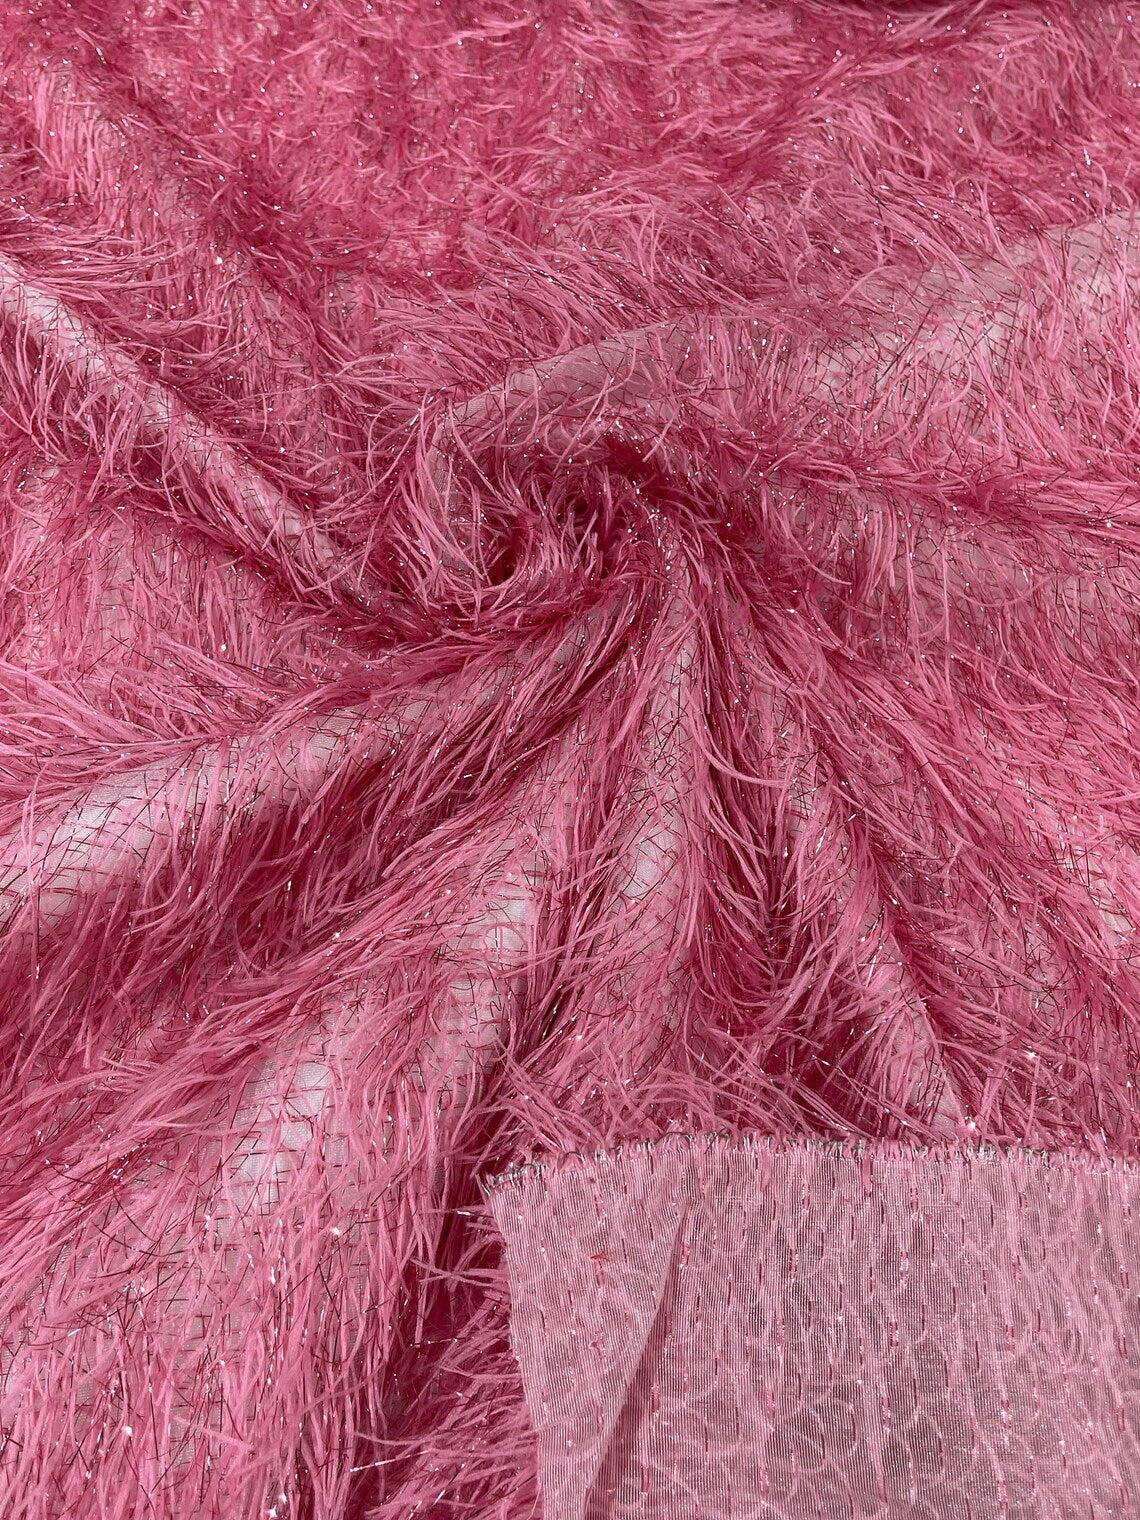 Eyelash Fringe Metallic Fabric - Dusty Pink - Hanging Fringe Metallic Decorative Crafts Dress Fabric By Yard